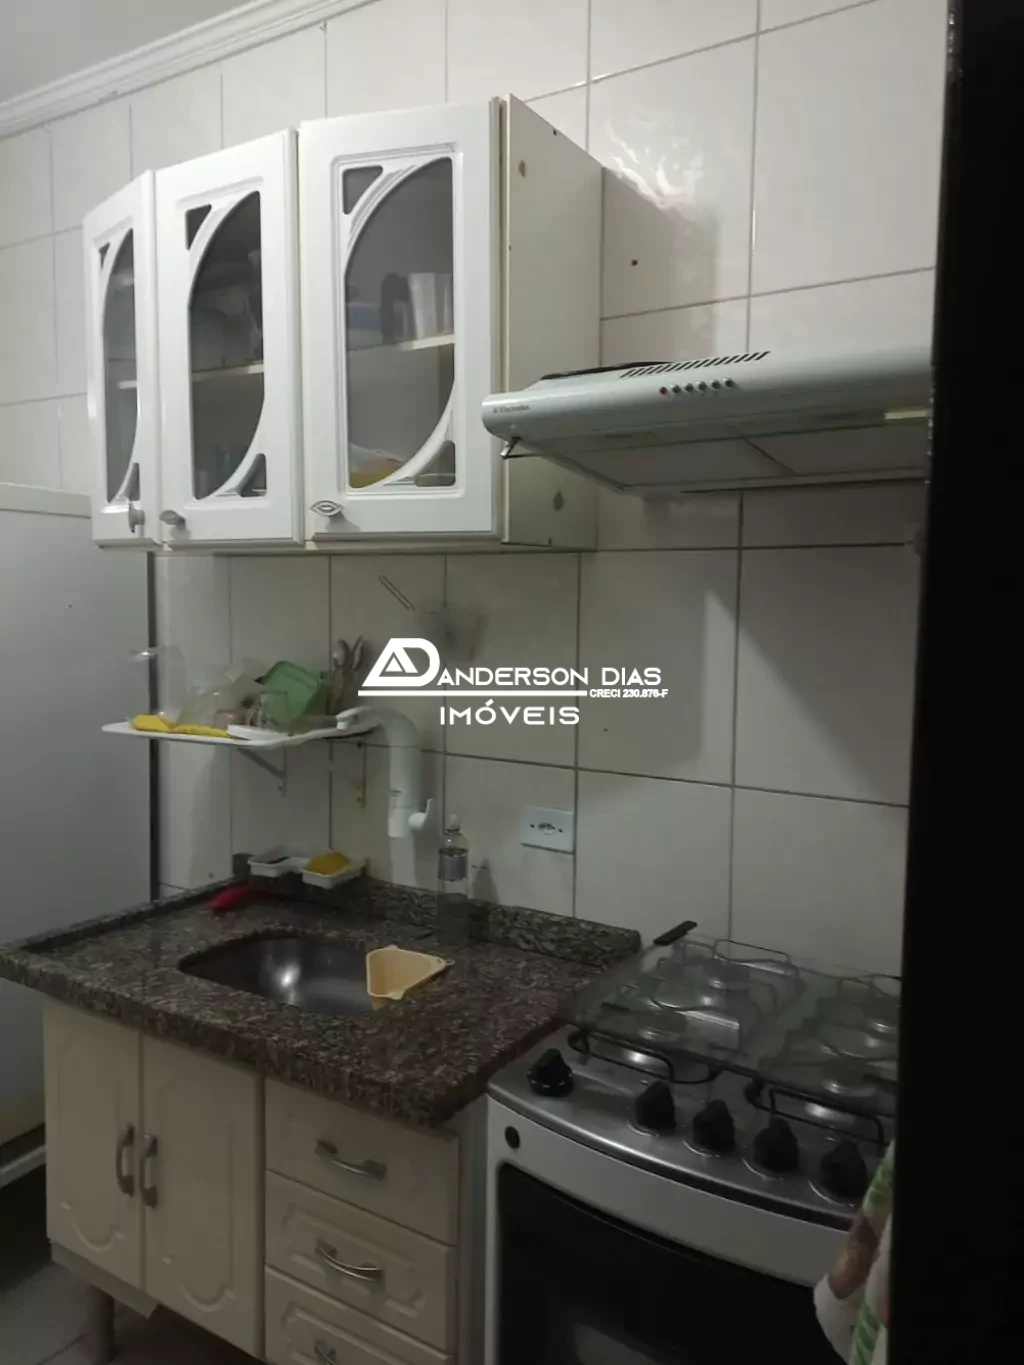 Apartamento mobiliado com 1 dormitório à venda 45m² por $ 220.000 - Prainha- Caraguatatuba/SP